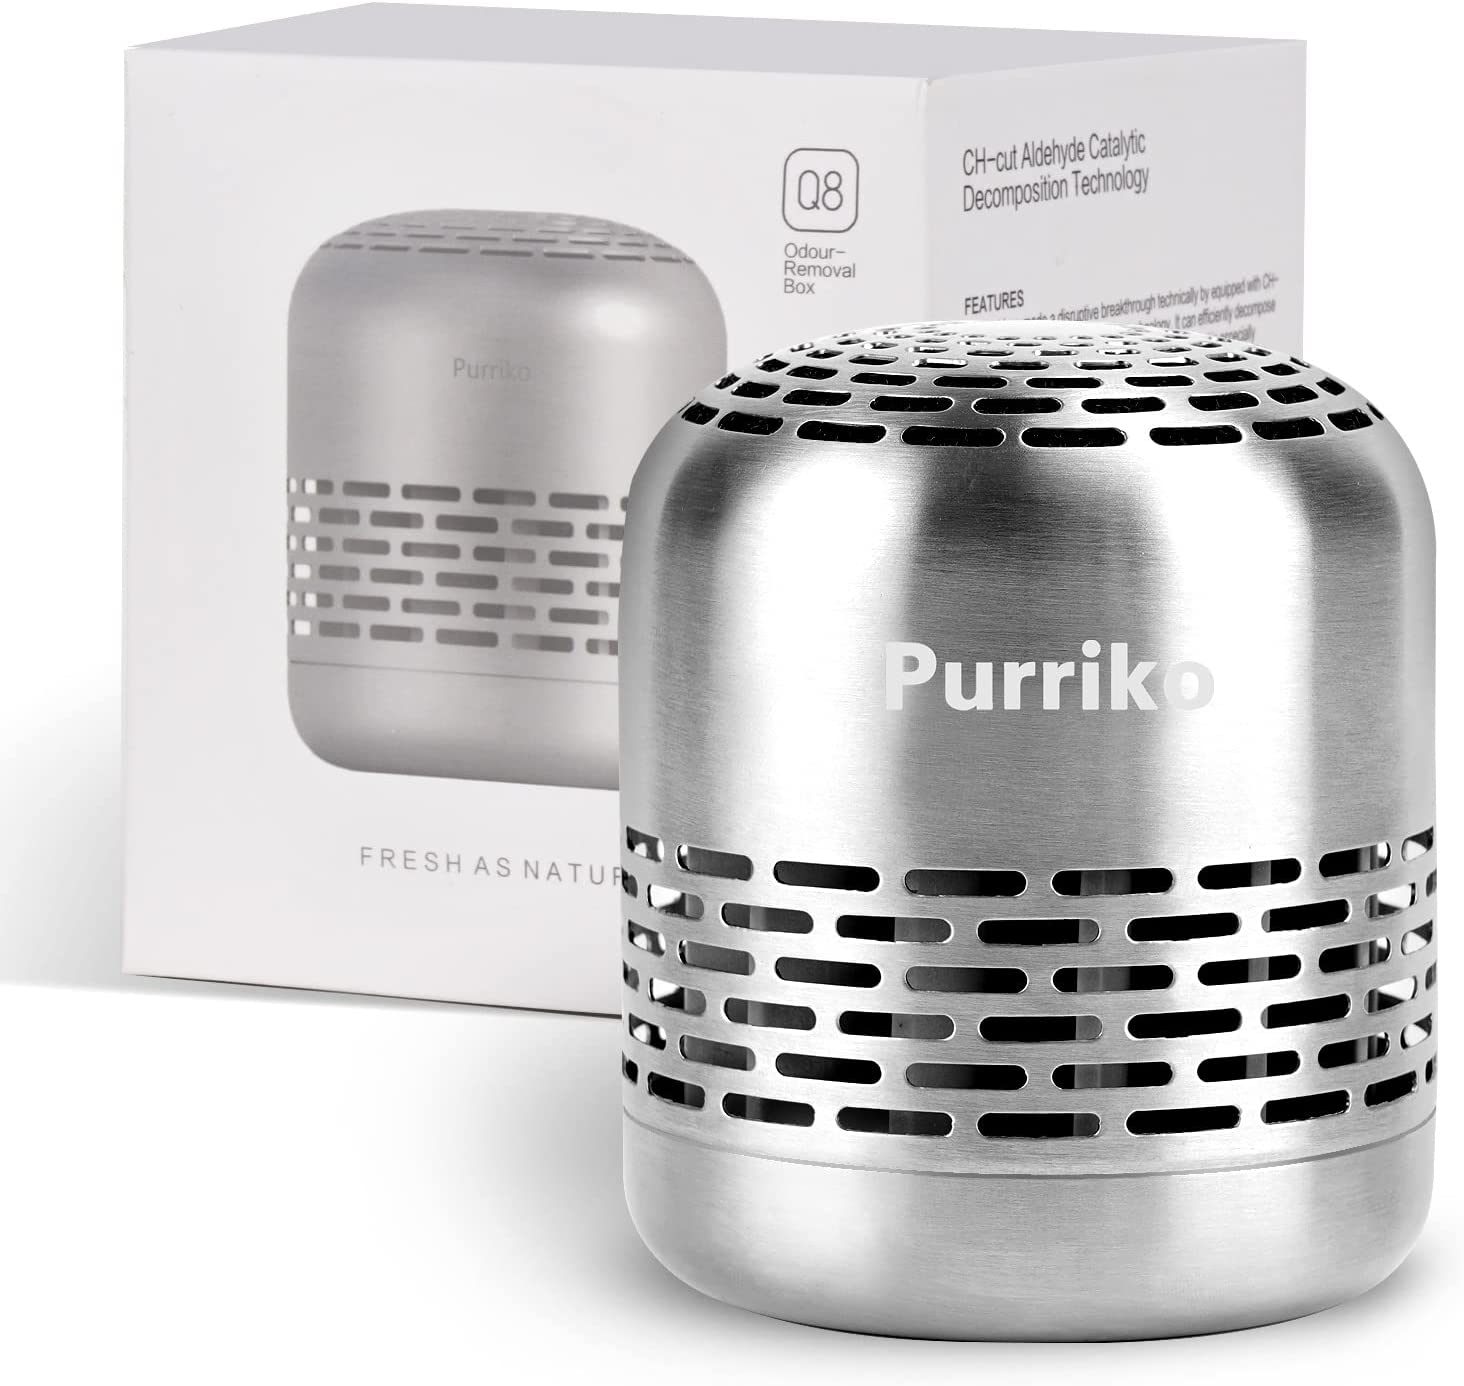 Purriko Compact Stainless Steel Fridge Deodorizer